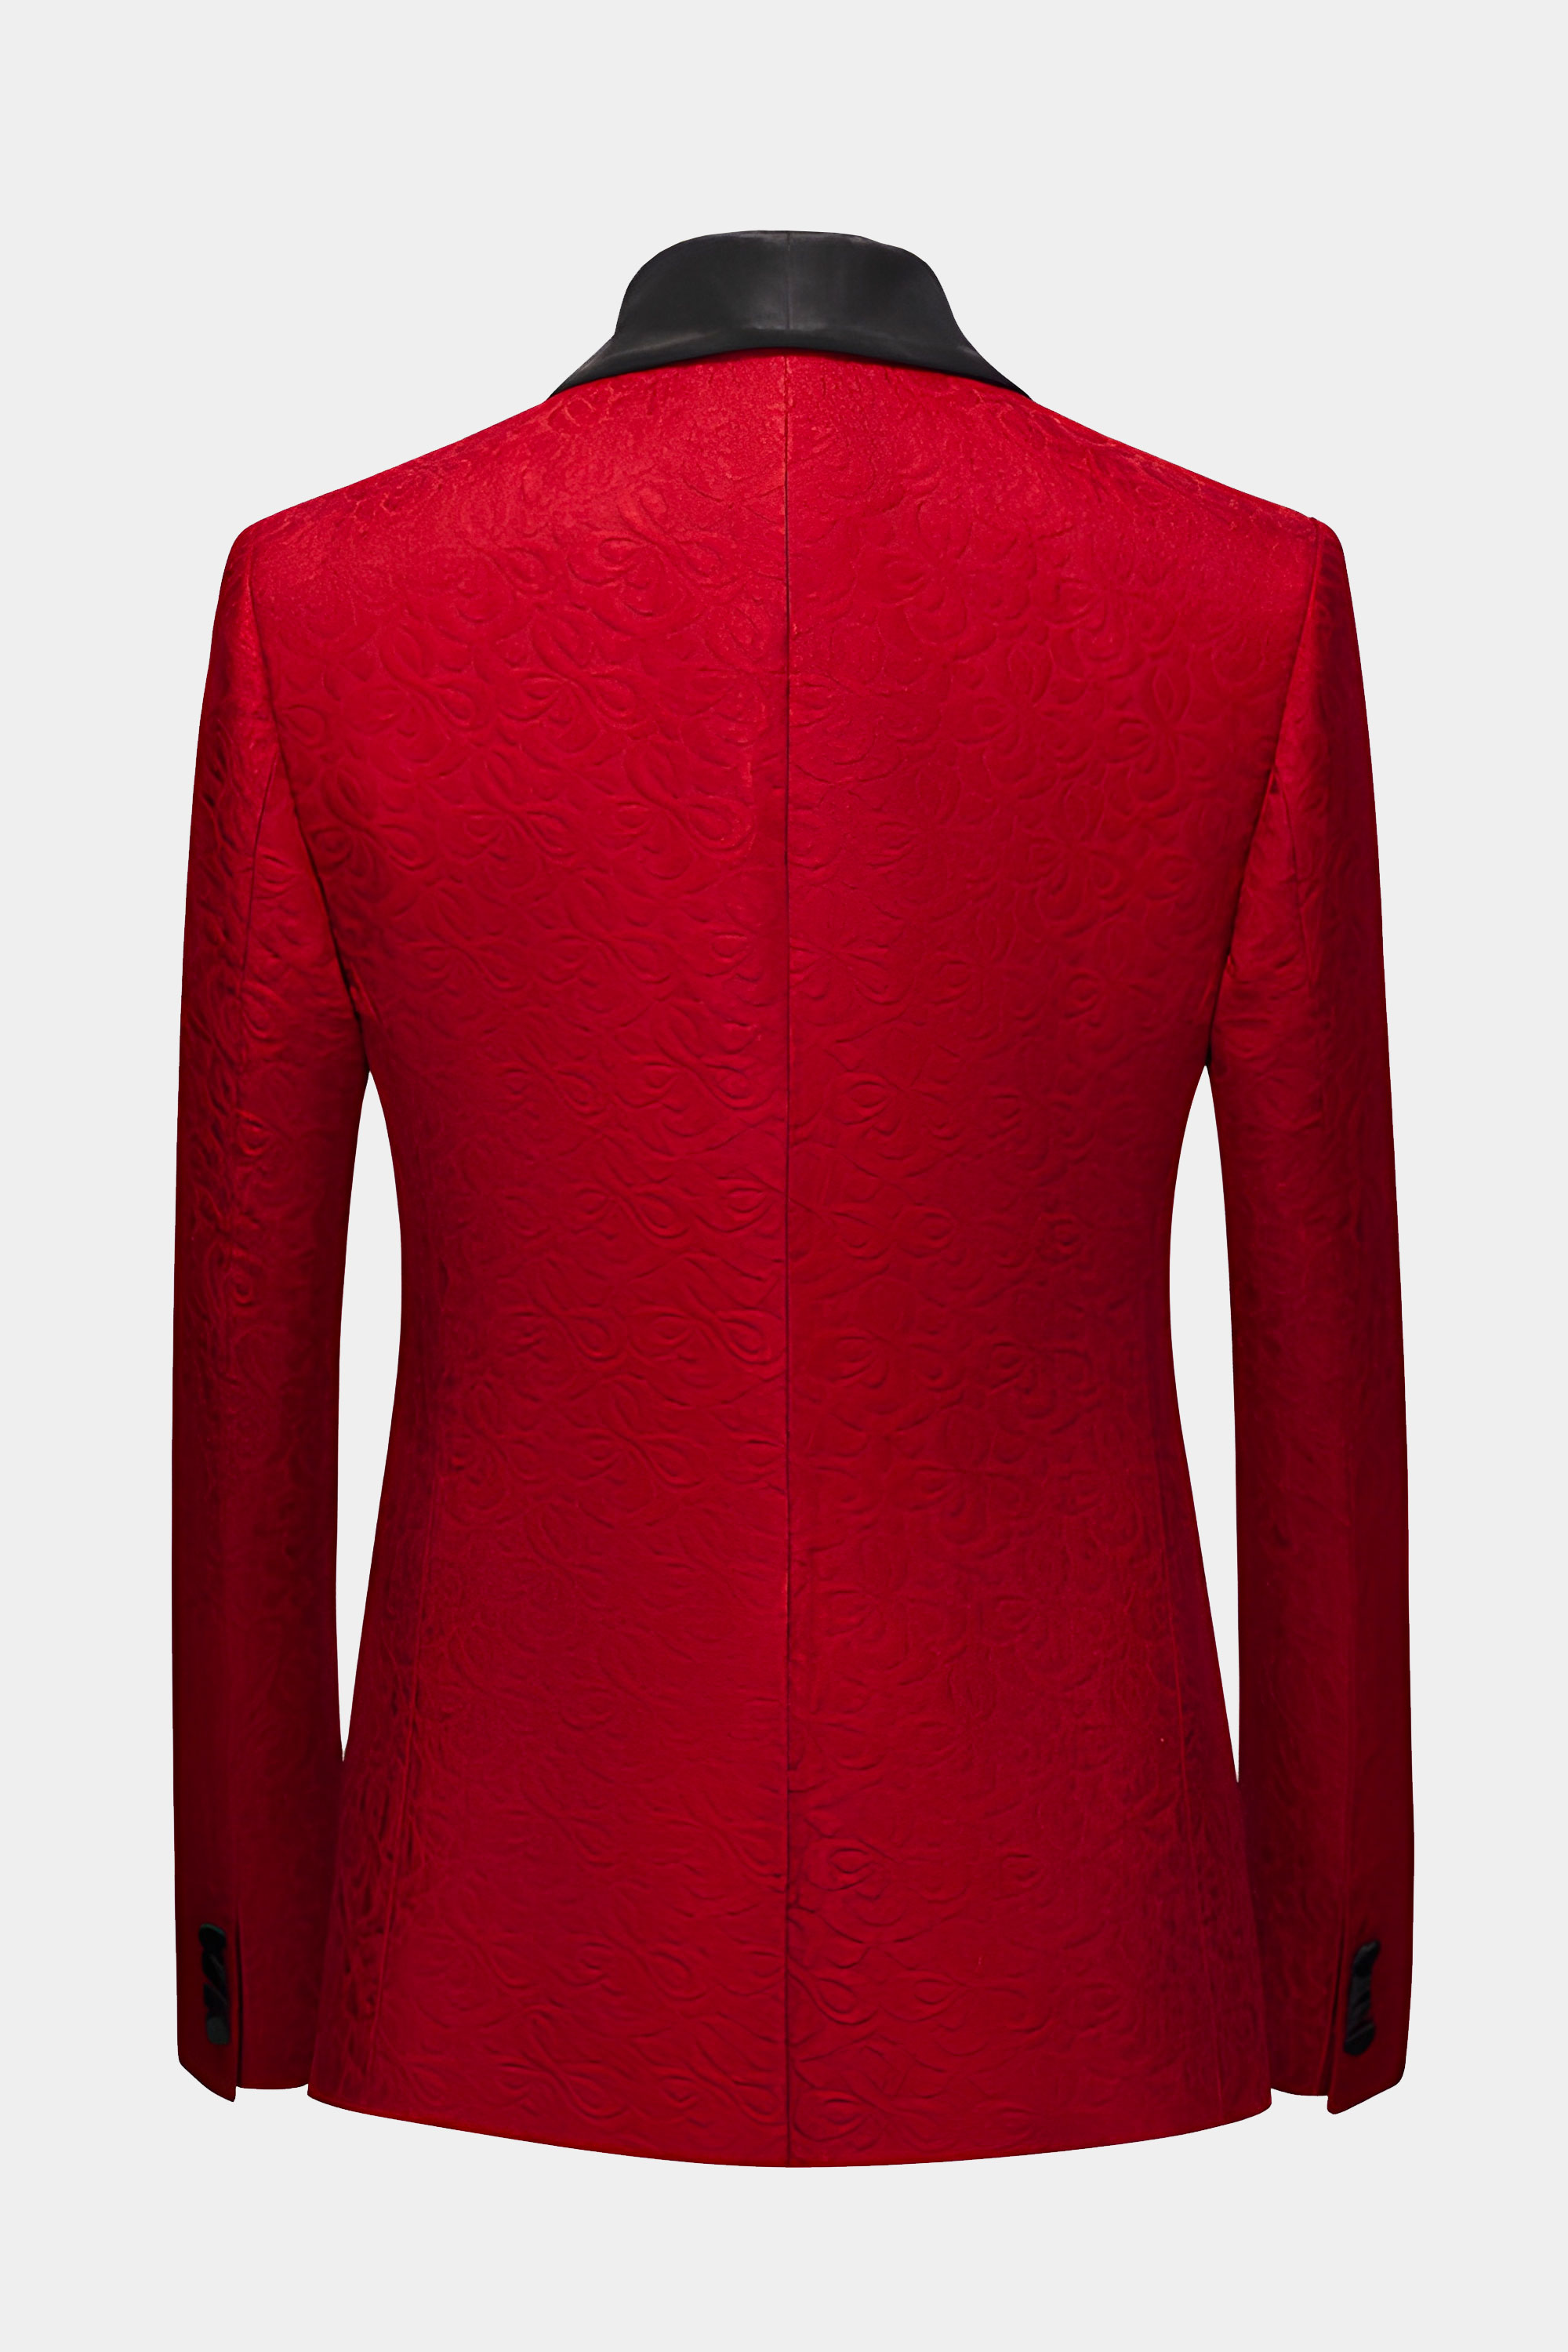 Apple Red Tuxedo Suit | Gentleman's Guru